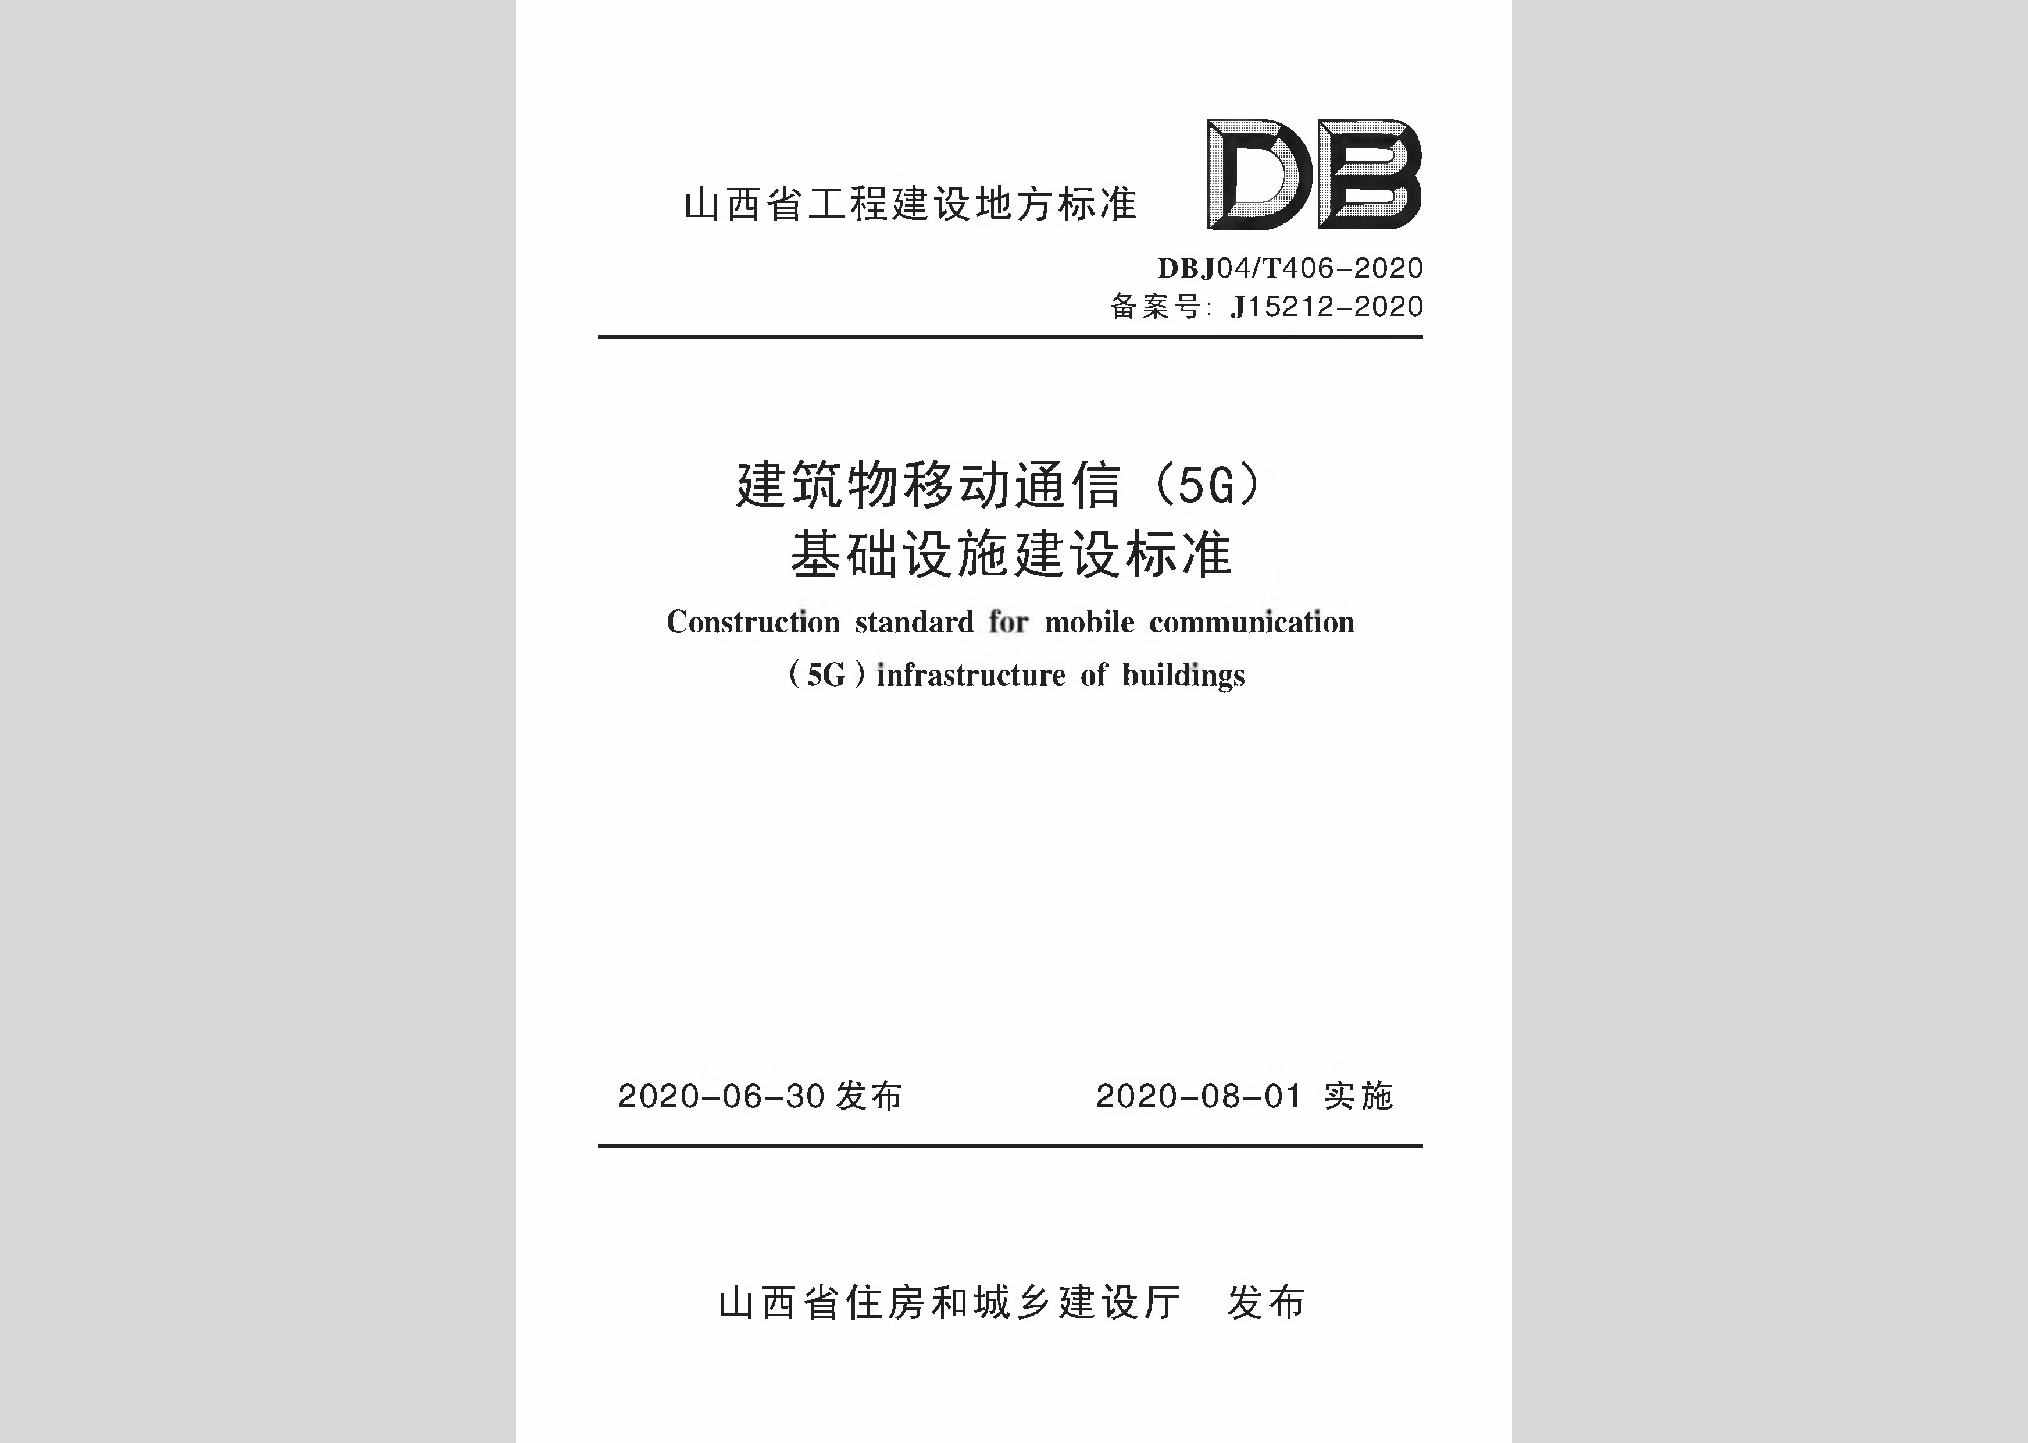 DBJ04/T406-2020：建筑物移动通信(5G)基础设施建设标准